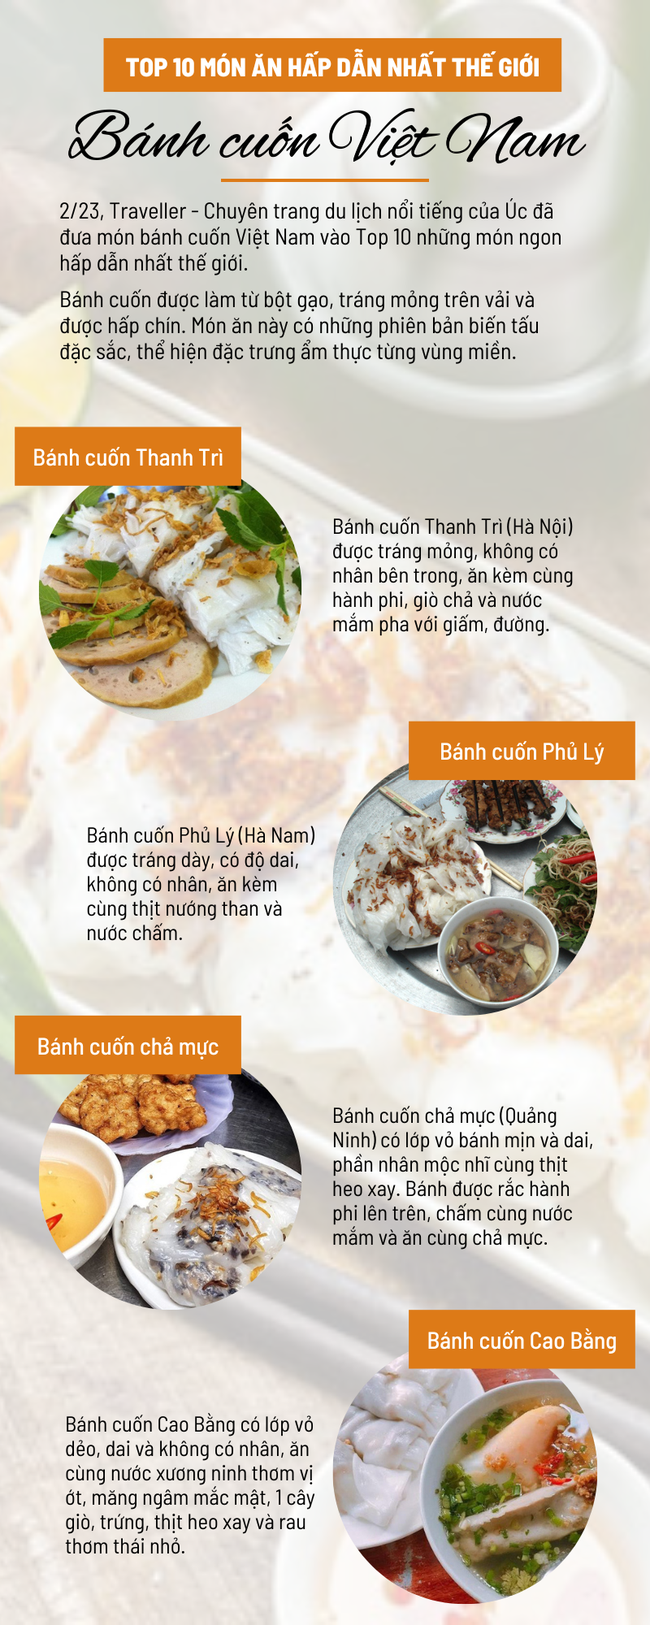 Bánh cuốn Việt Nam lọt top 10 món ăn hấp dẫn nhất thế giới và 4 loại bánh cuốn nổi tiếng có thể bạn chưa biết - Ảnh 1.